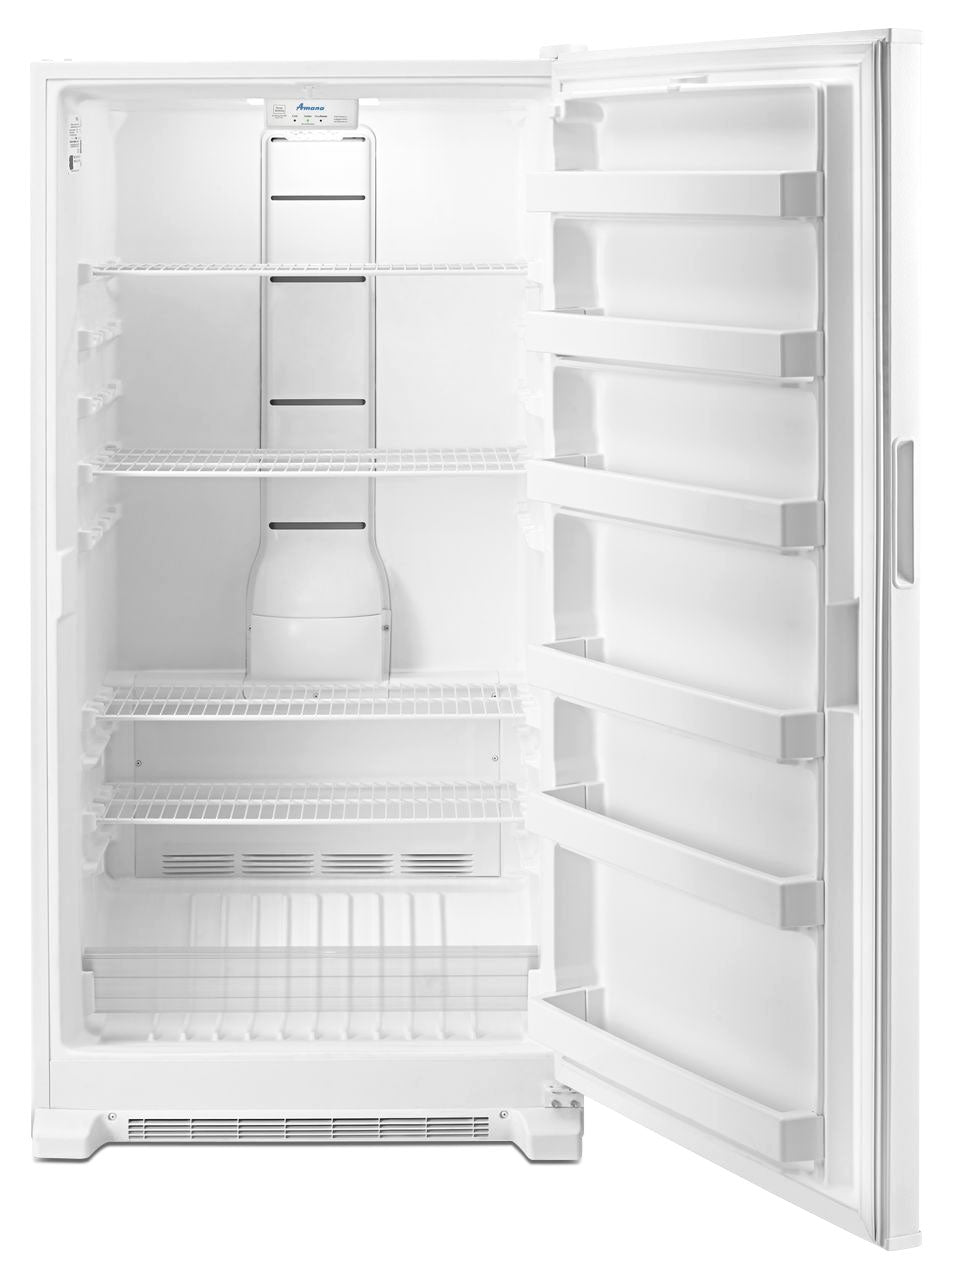 Amana White Frost Free Upright Freezer (18 Cu. Ft) - AZF33X18DW